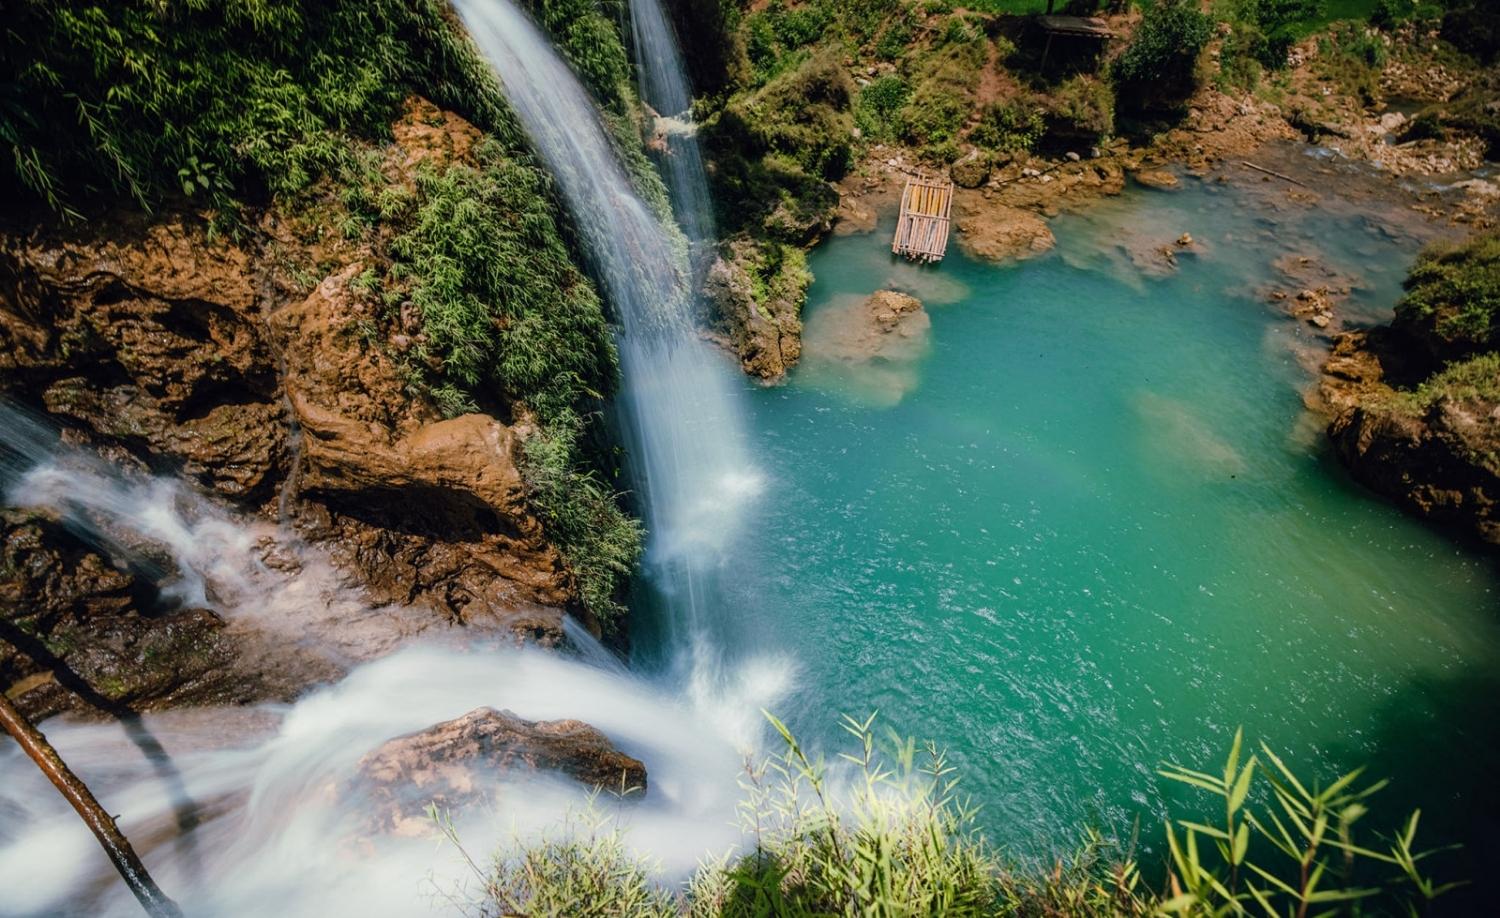 Cách Hà Nội không xa có một thác nước 7 tầng, được ví đẹp như "tuyệt tình cốc" trong phim